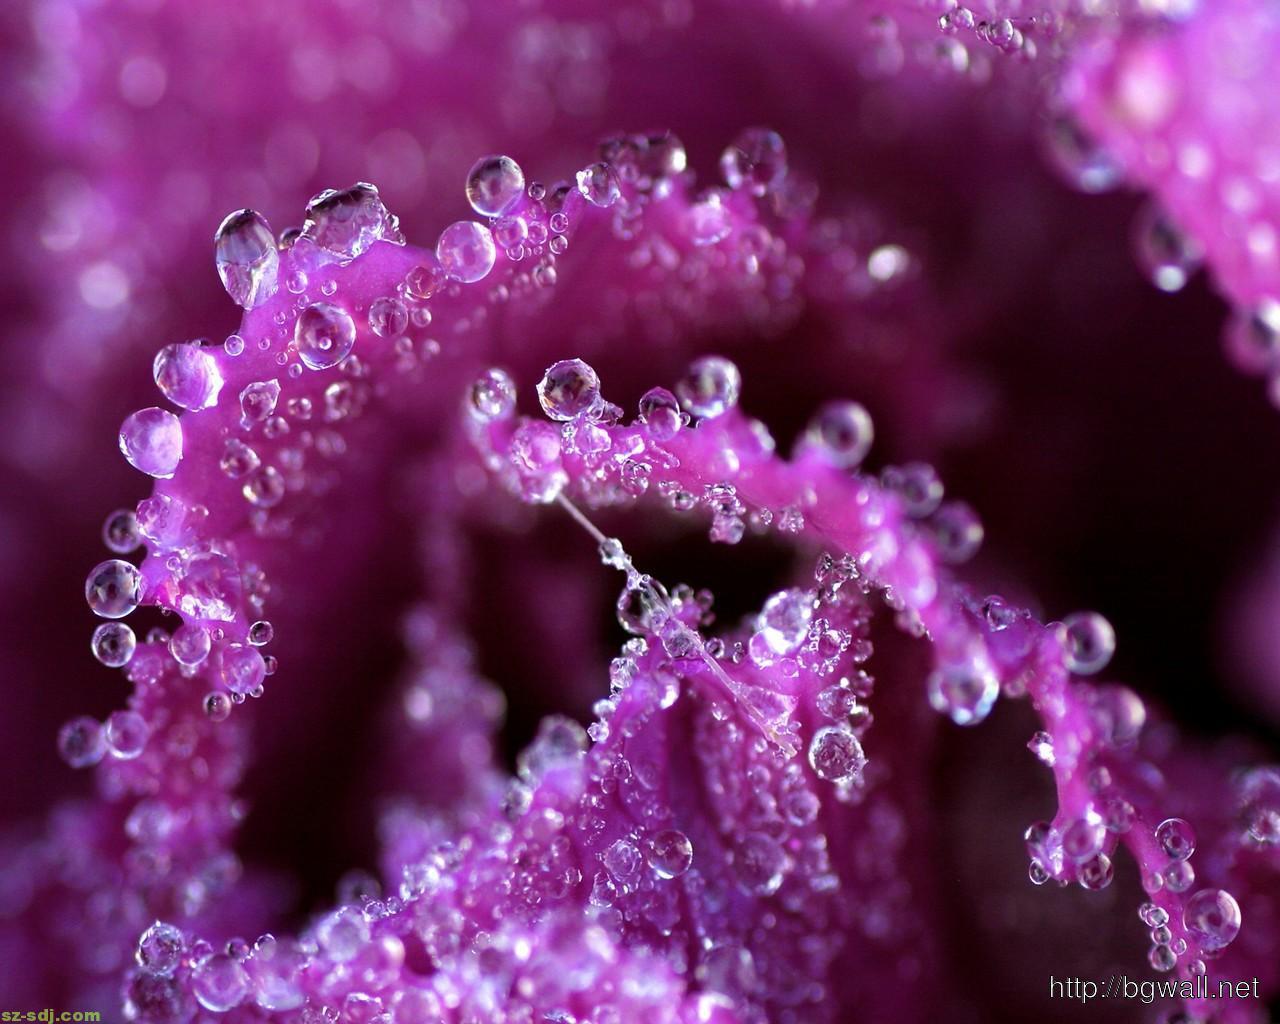 Purple Water Droplets on Flower Wallpaper by HD Wallpaper Daily